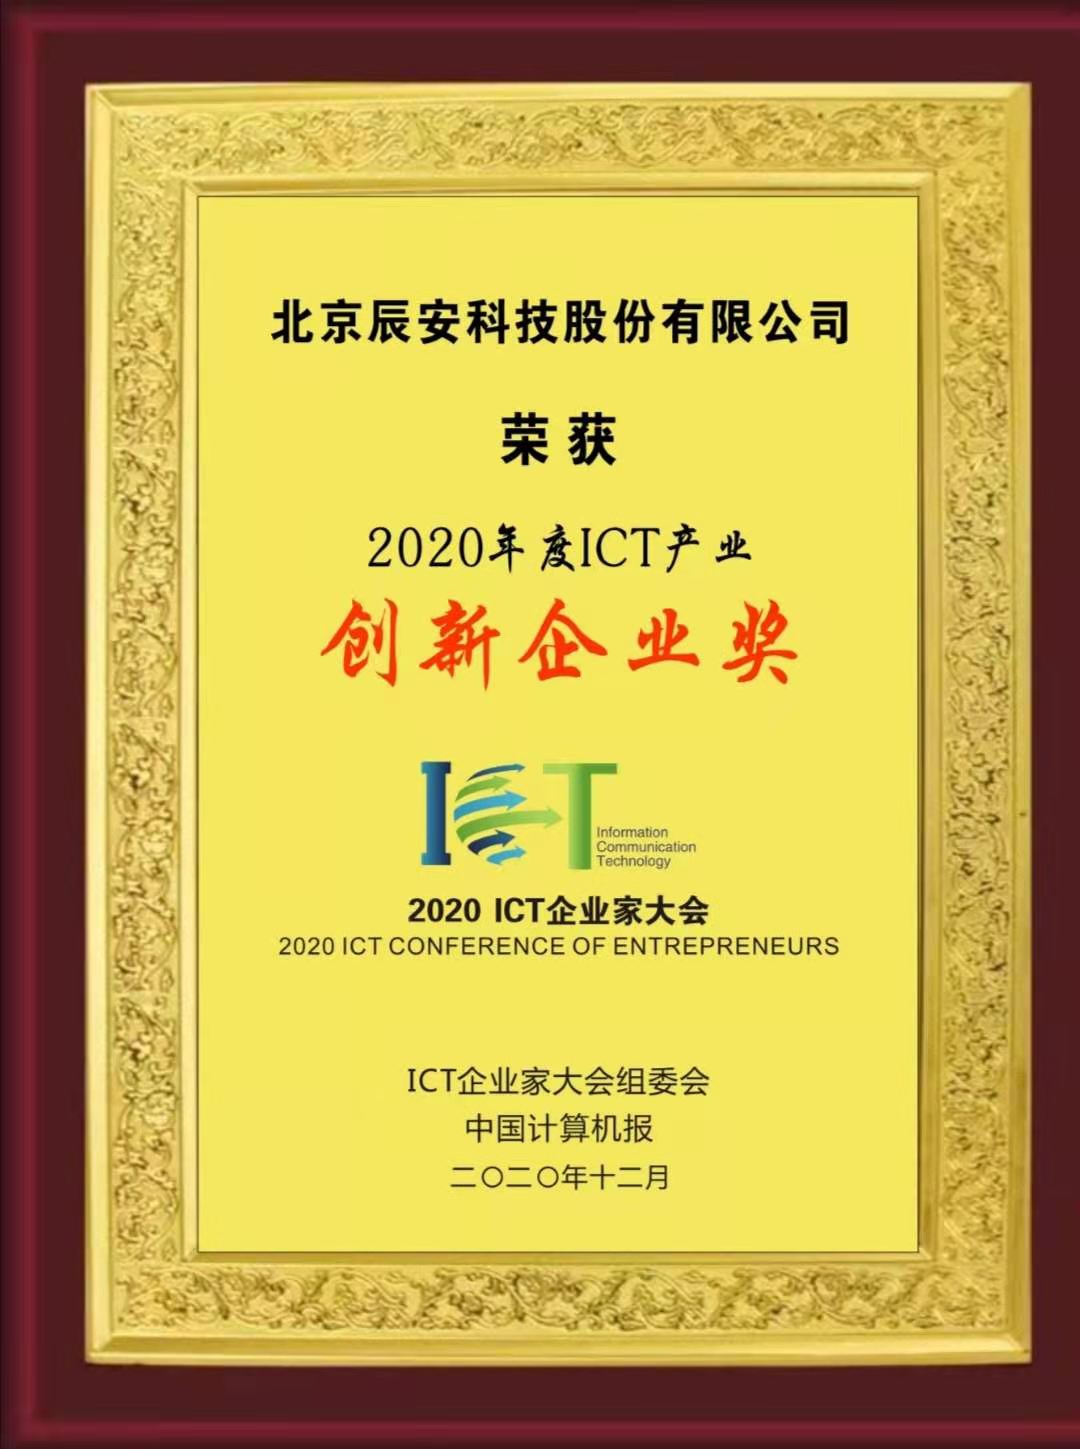 云顶yd12300荣获“2020年度ICT产业创新企业奖”